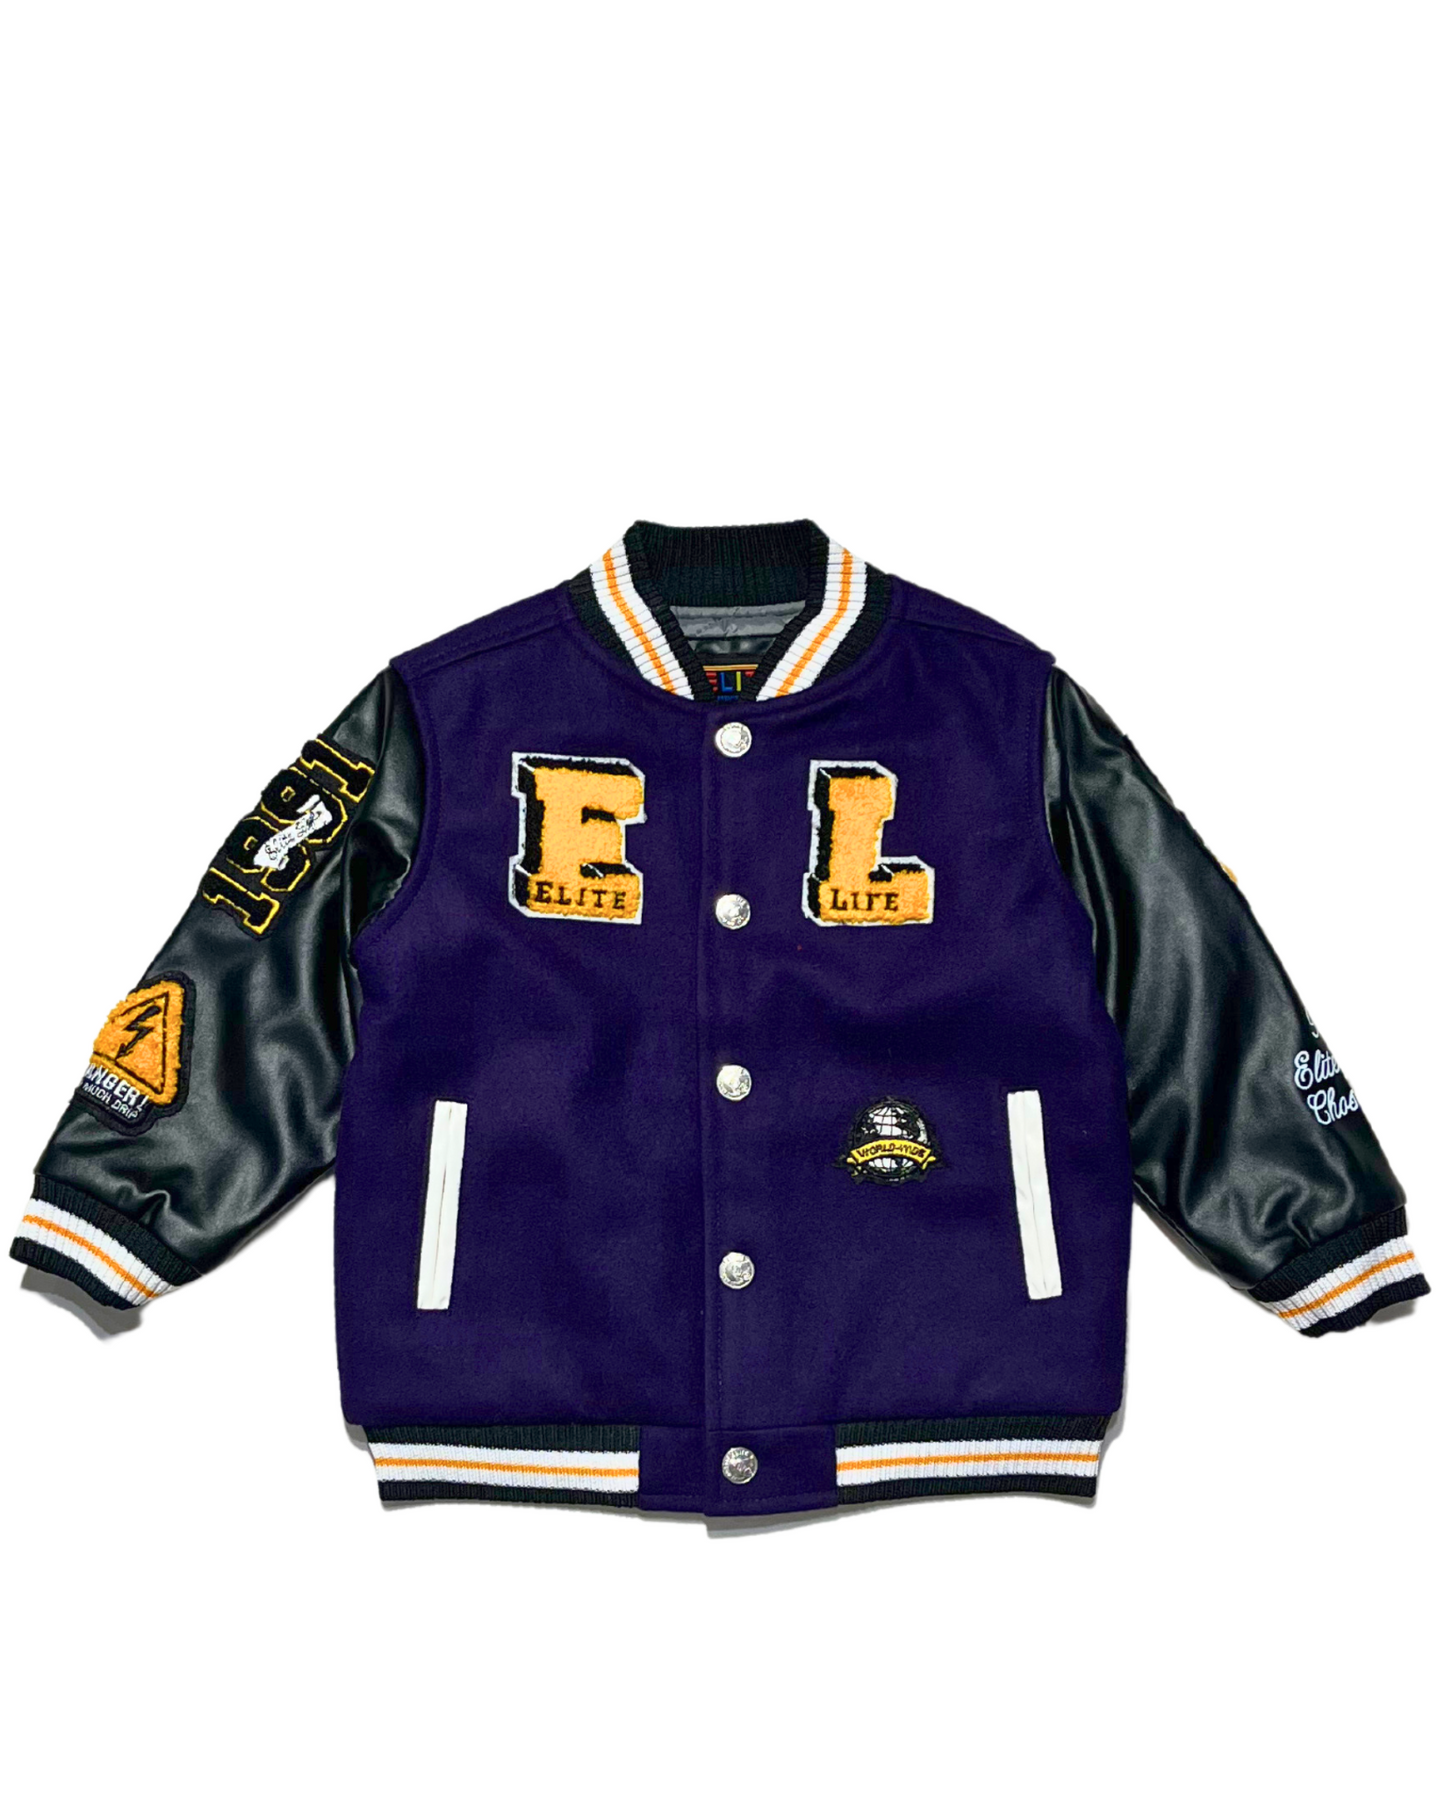 Kids Just Elite Varsity Jacket – Raza